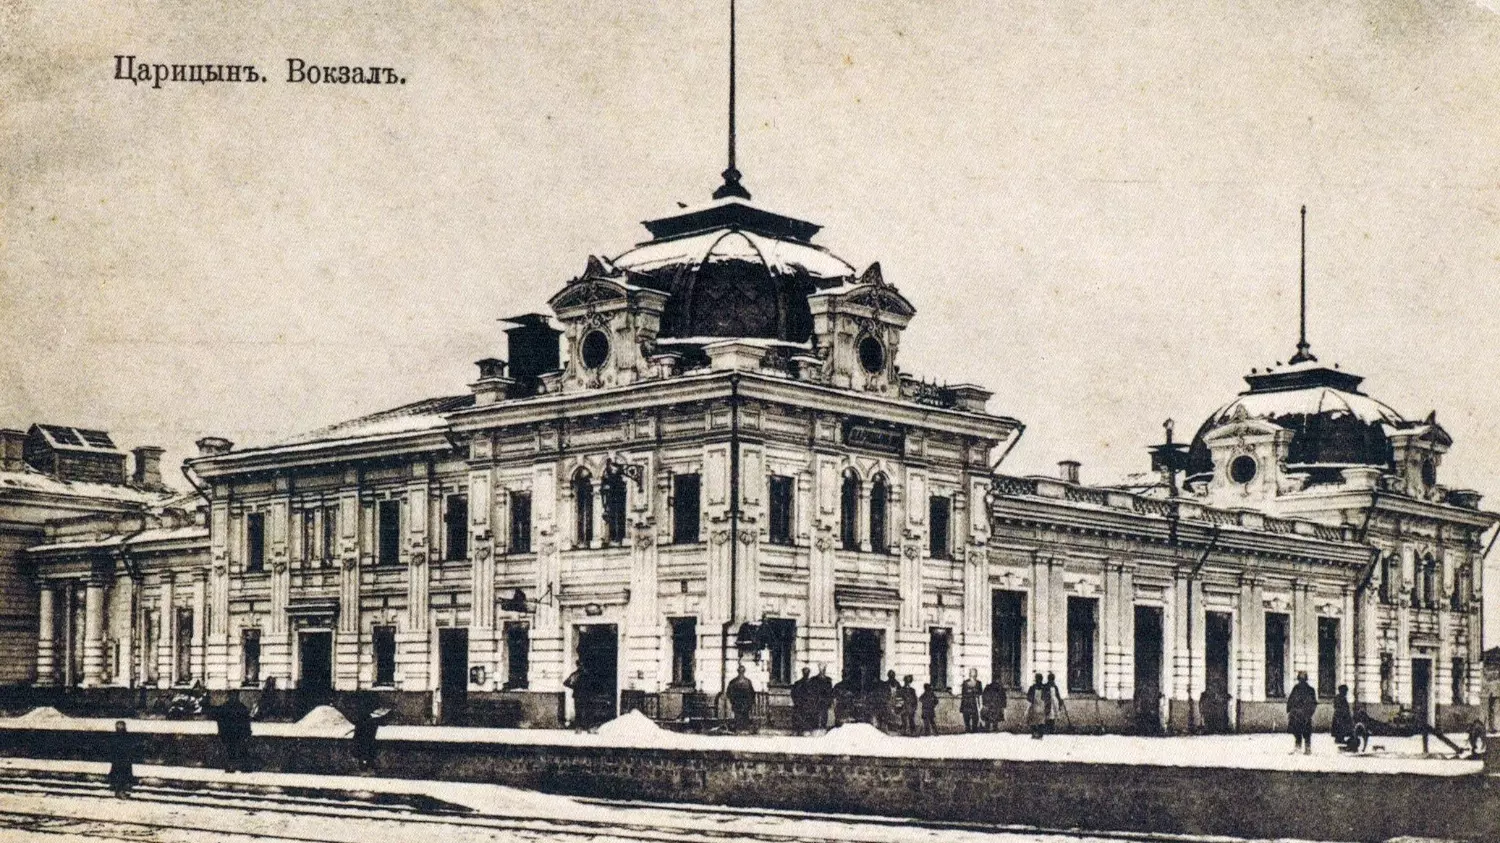 Главный вокзал Царицына до революции